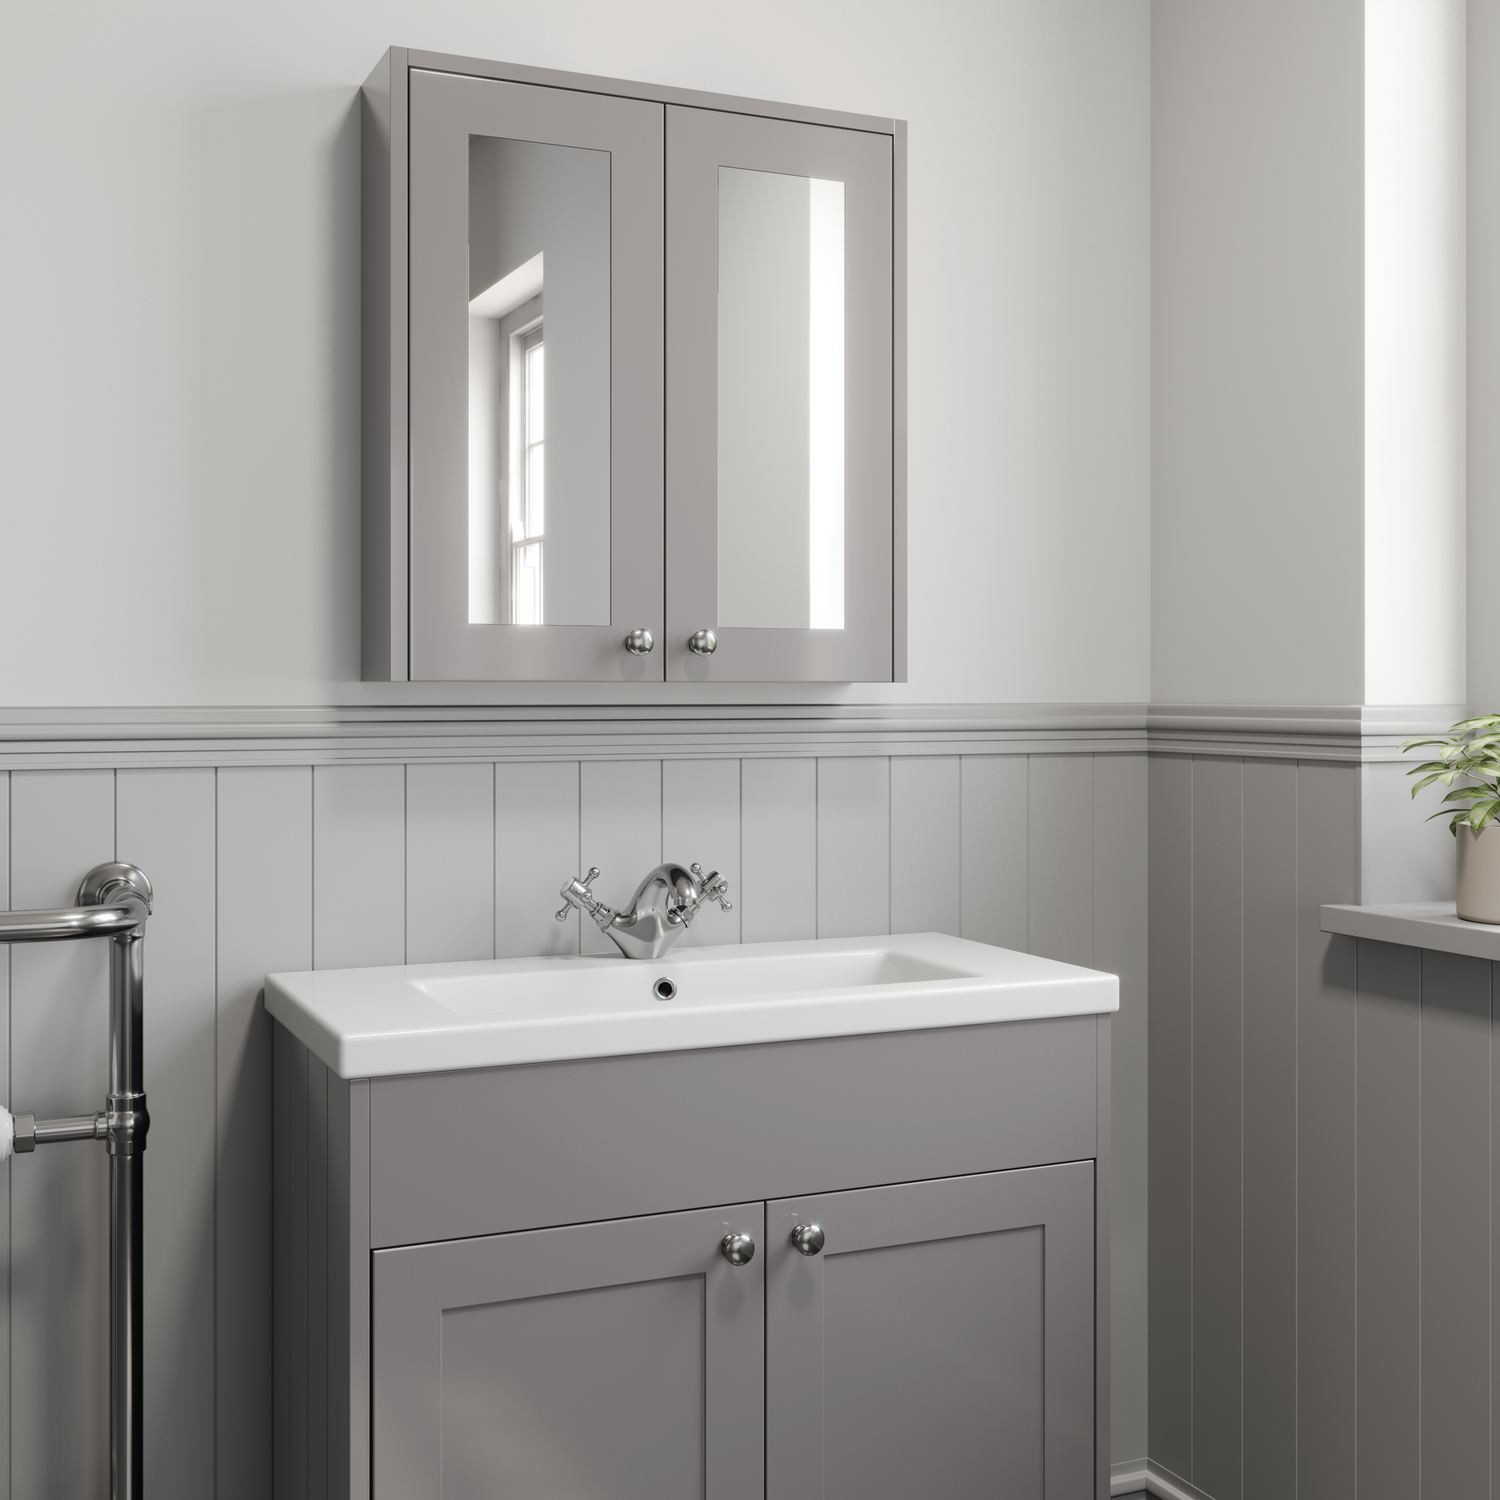 Mirrored Bathroom Cabinets
 600mm Bathroom Mirror Cabinet 2 Door Storage Cupboard Wall